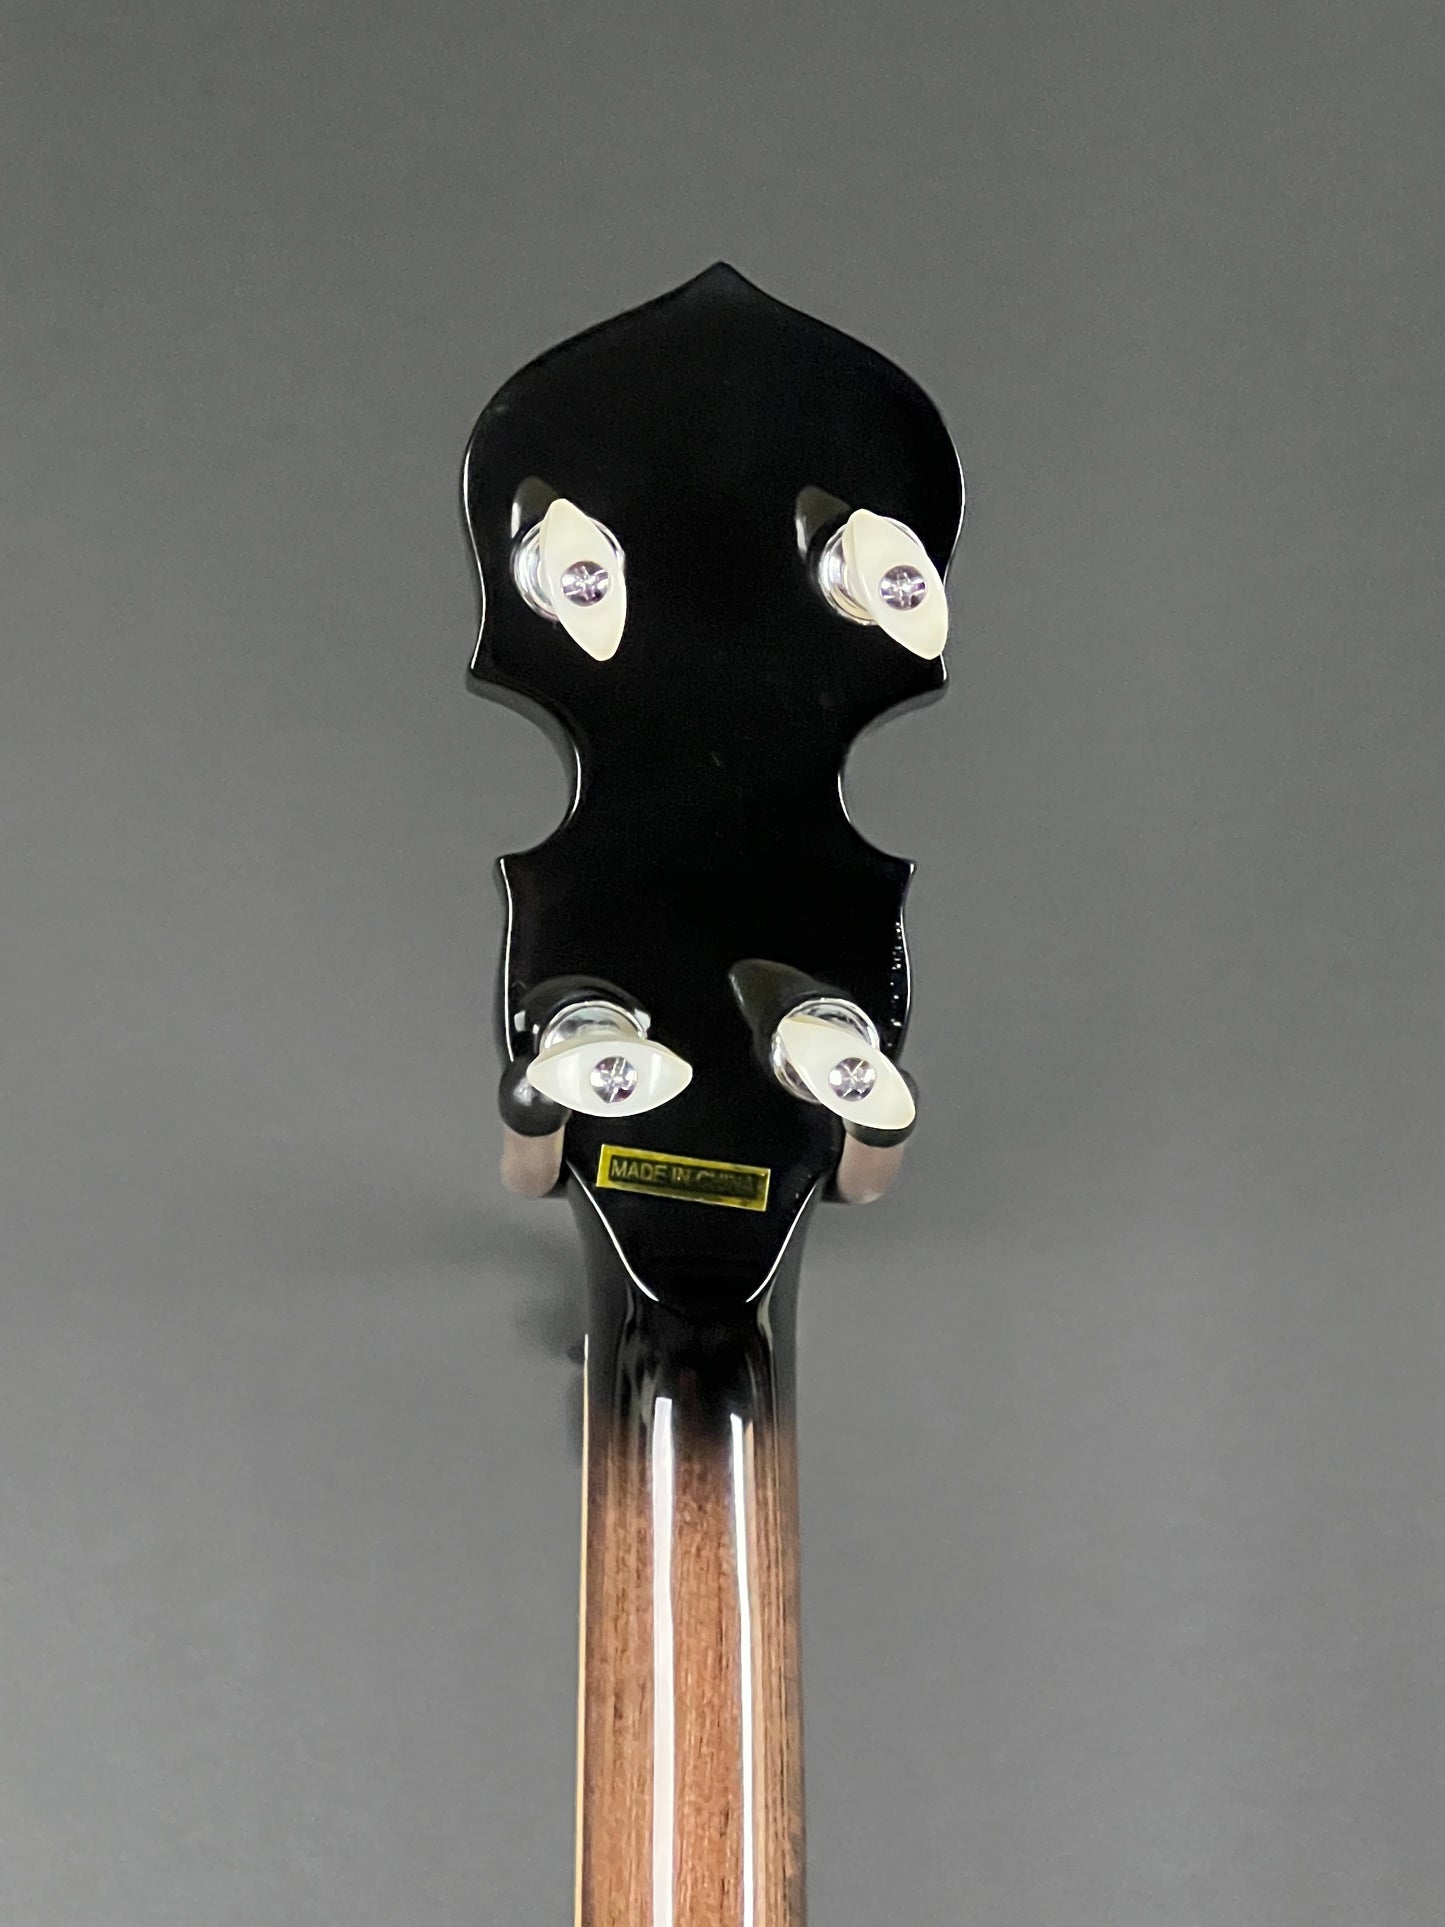 Mastertone Gold Tone Orange Blossom Banjo Arch Top with Case OB-250AT